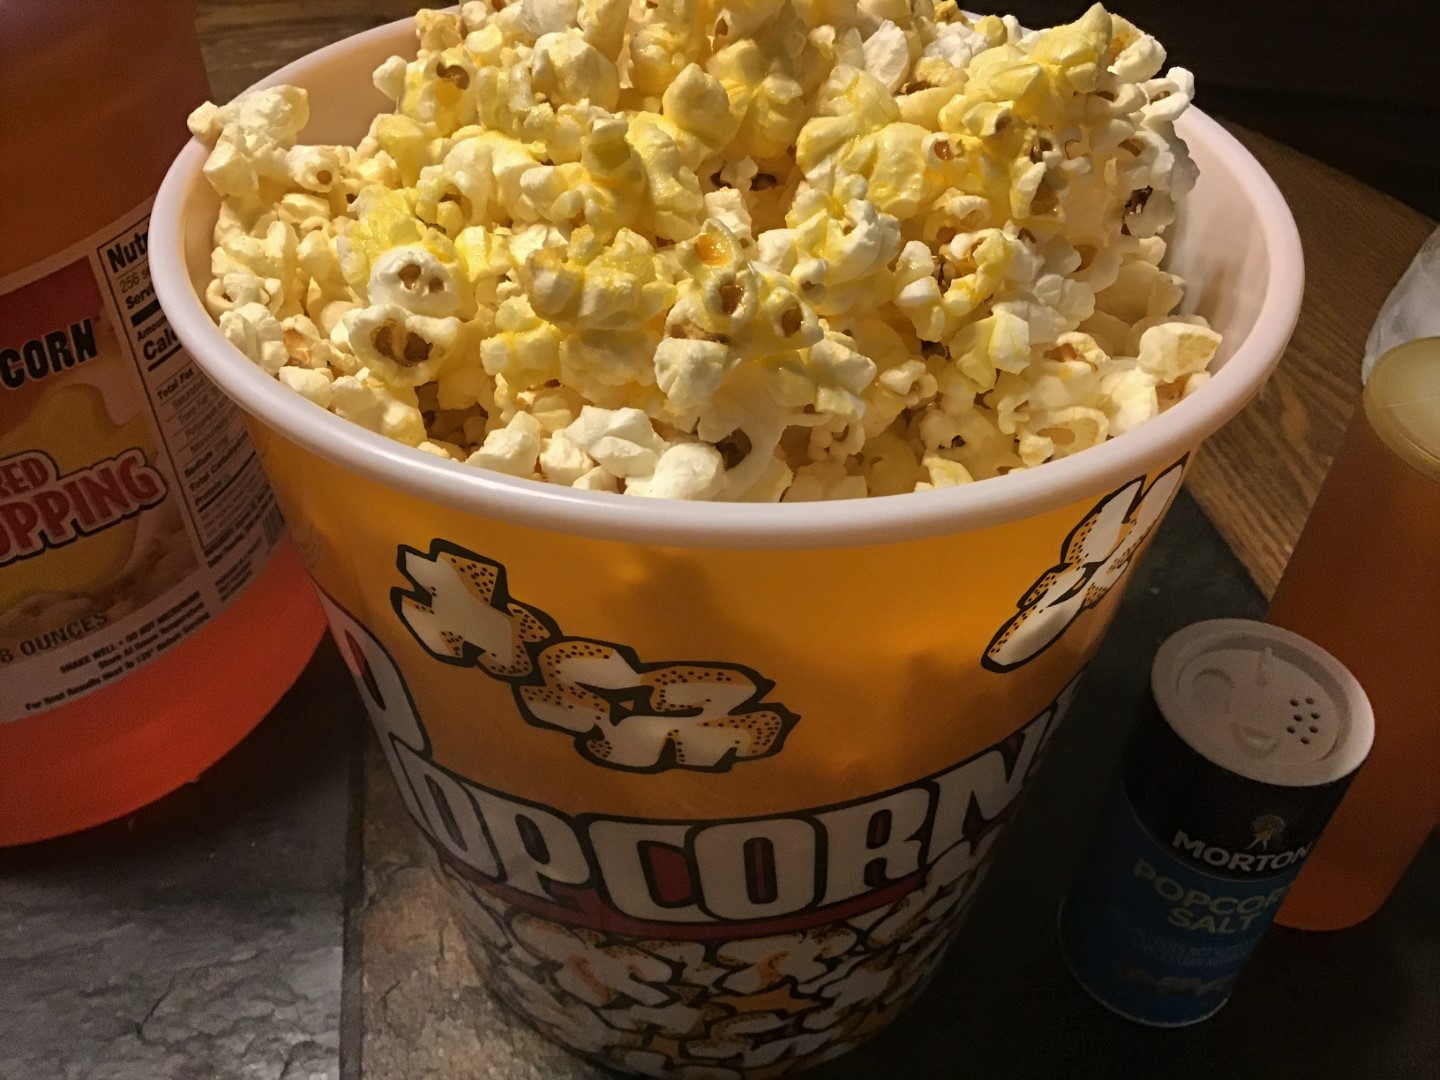 flavacol popcorn recipe